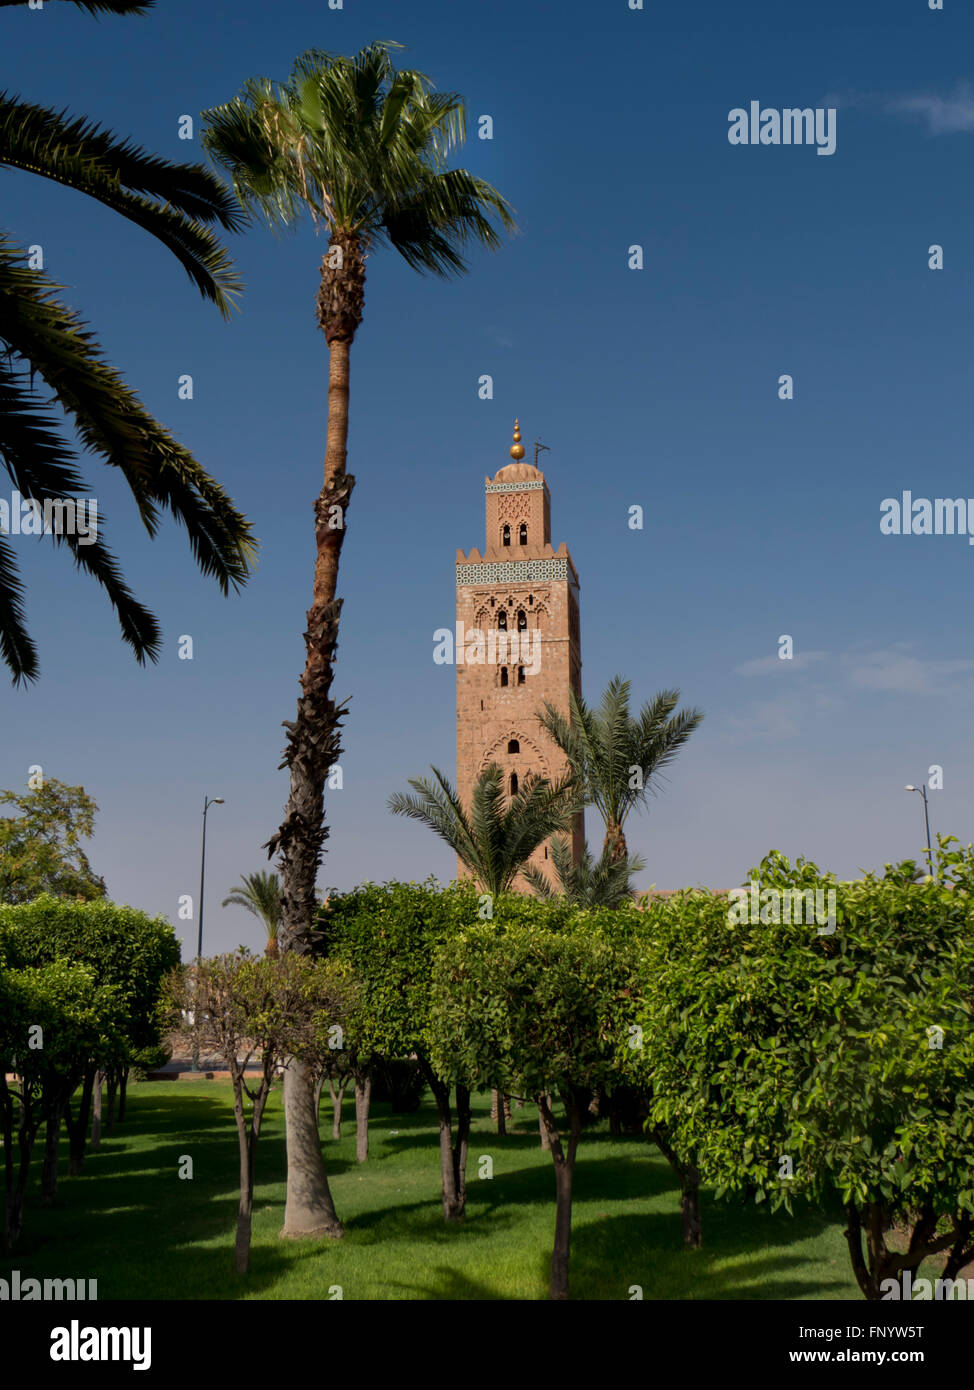 Morocco, Marrakech, Koutoubia Mosque Stock Photo